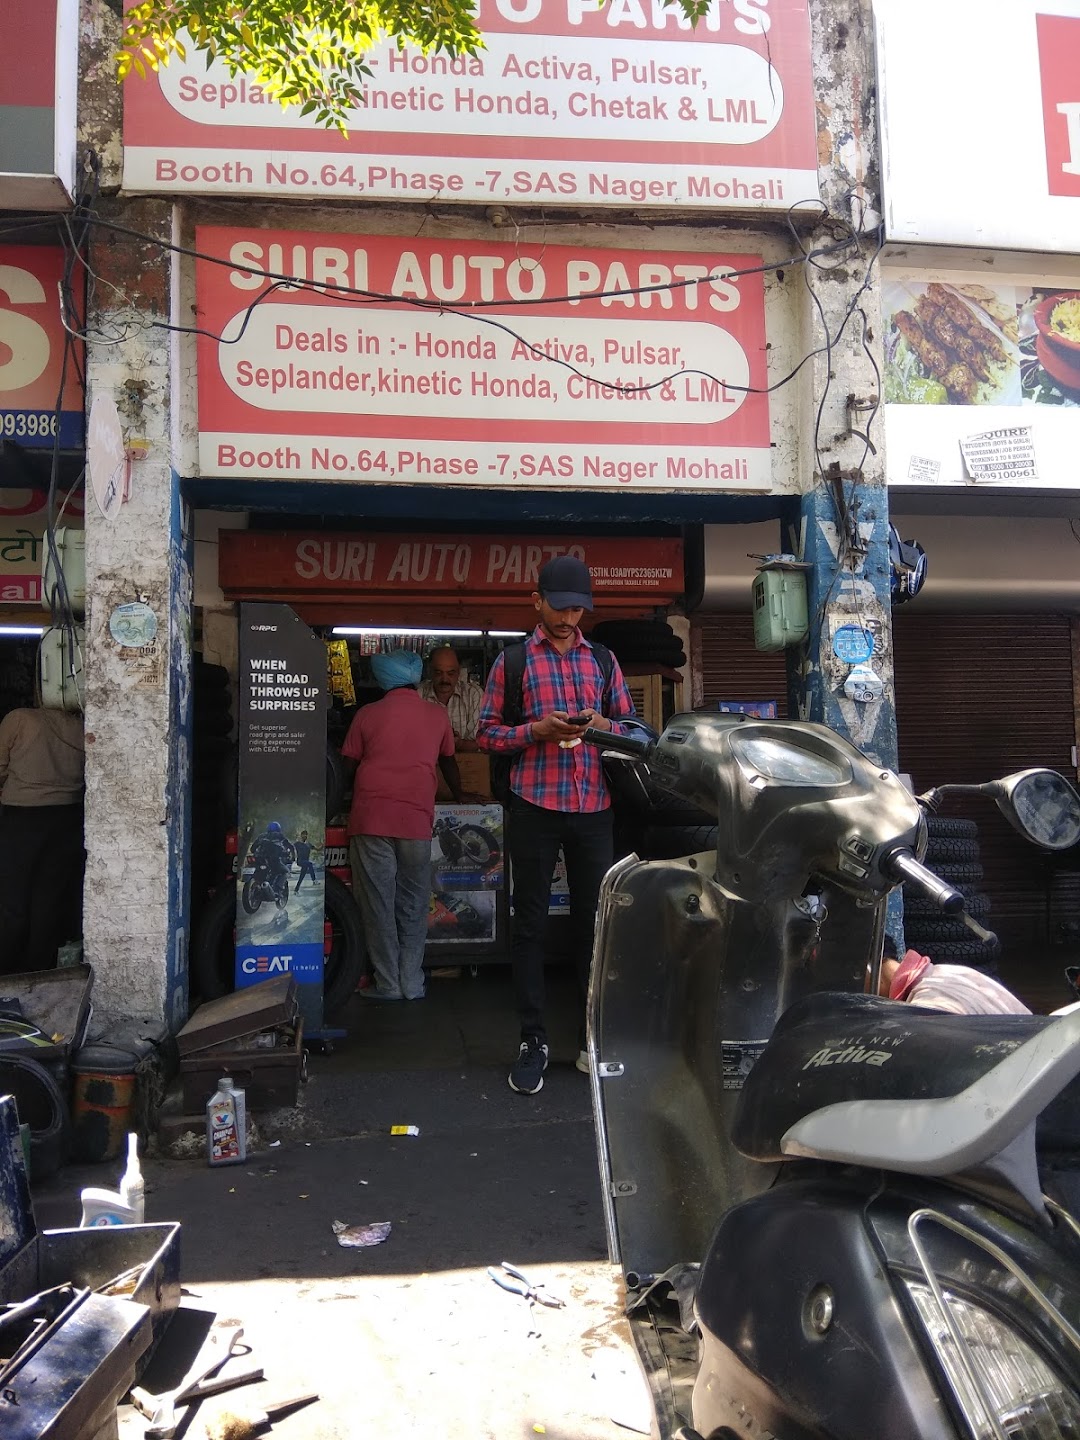 Suri Auto Parts